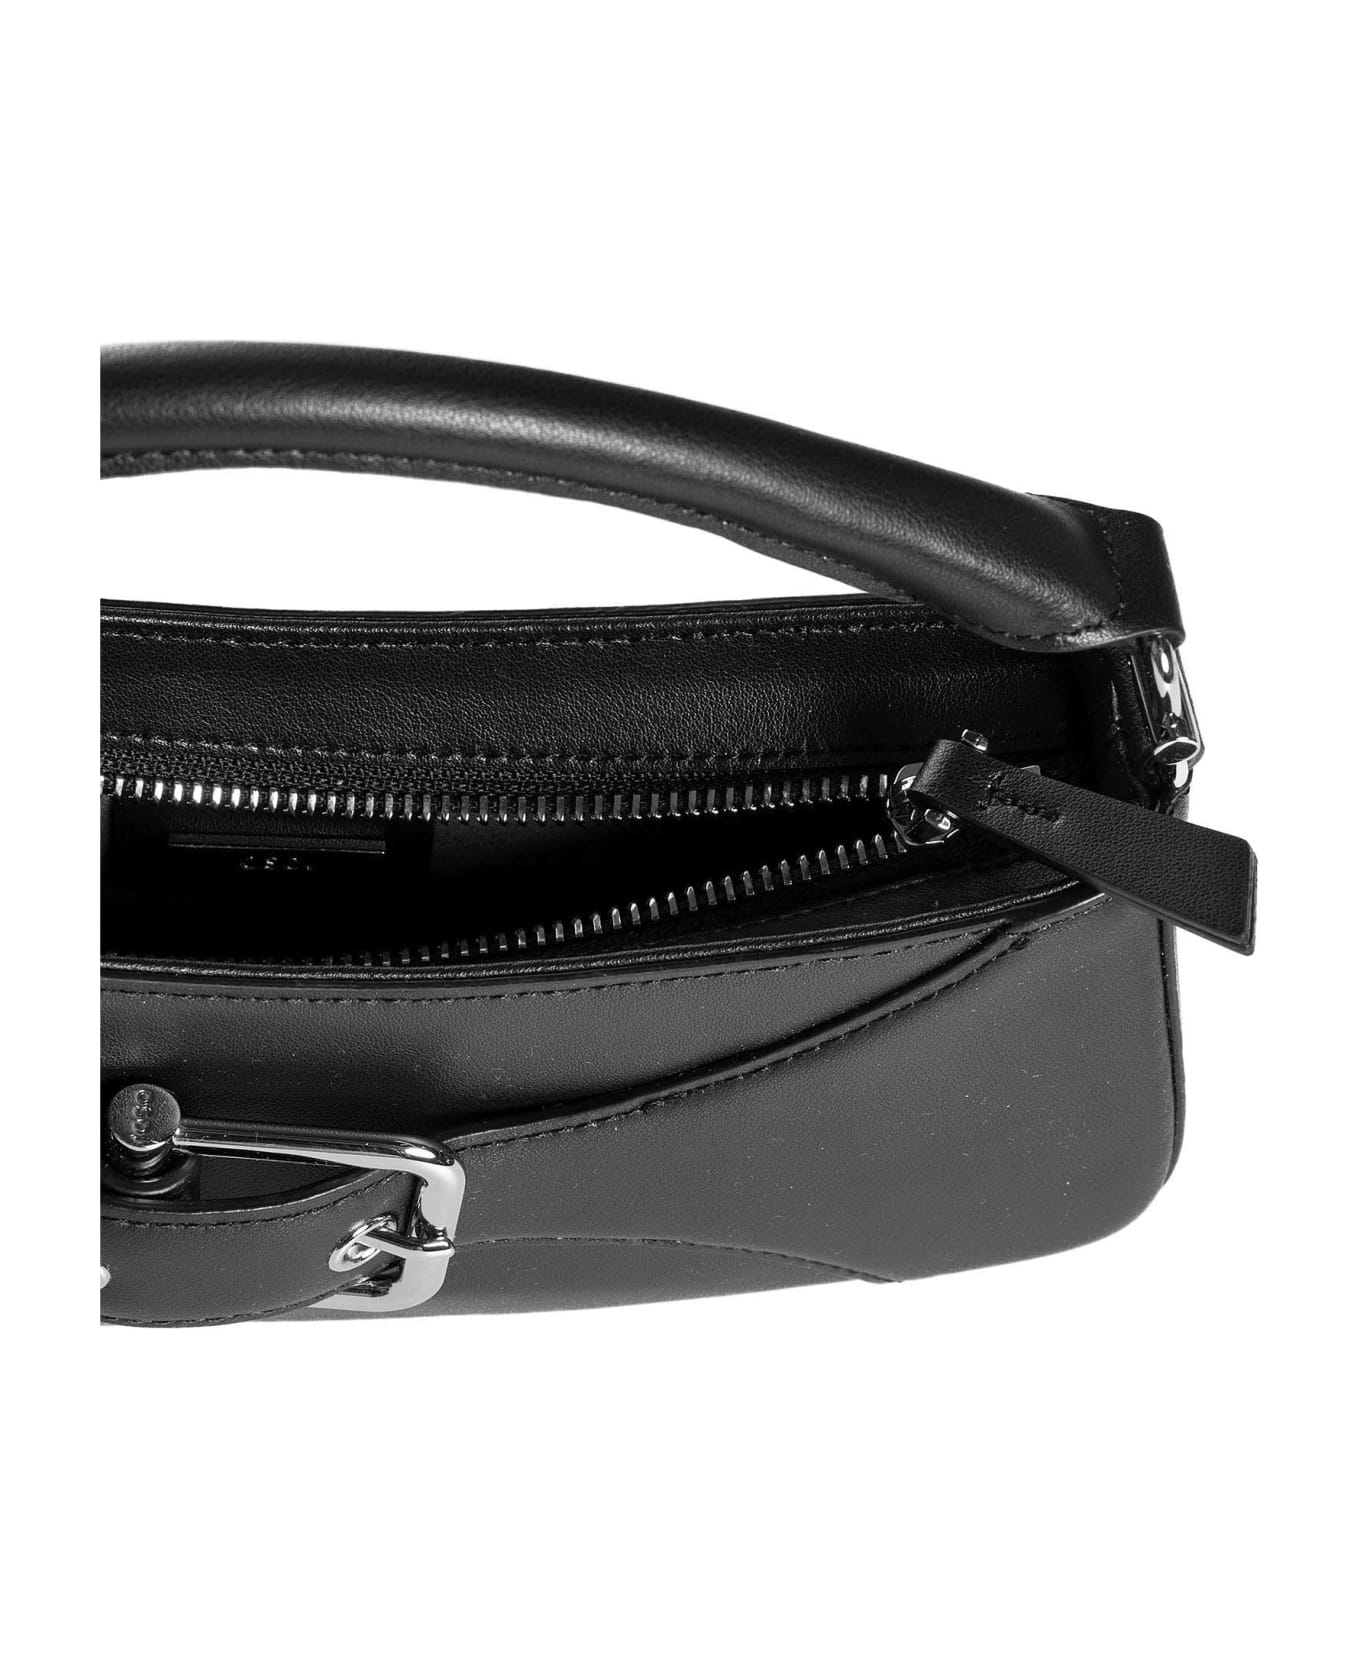 OSOI Shoulder Bag - Black